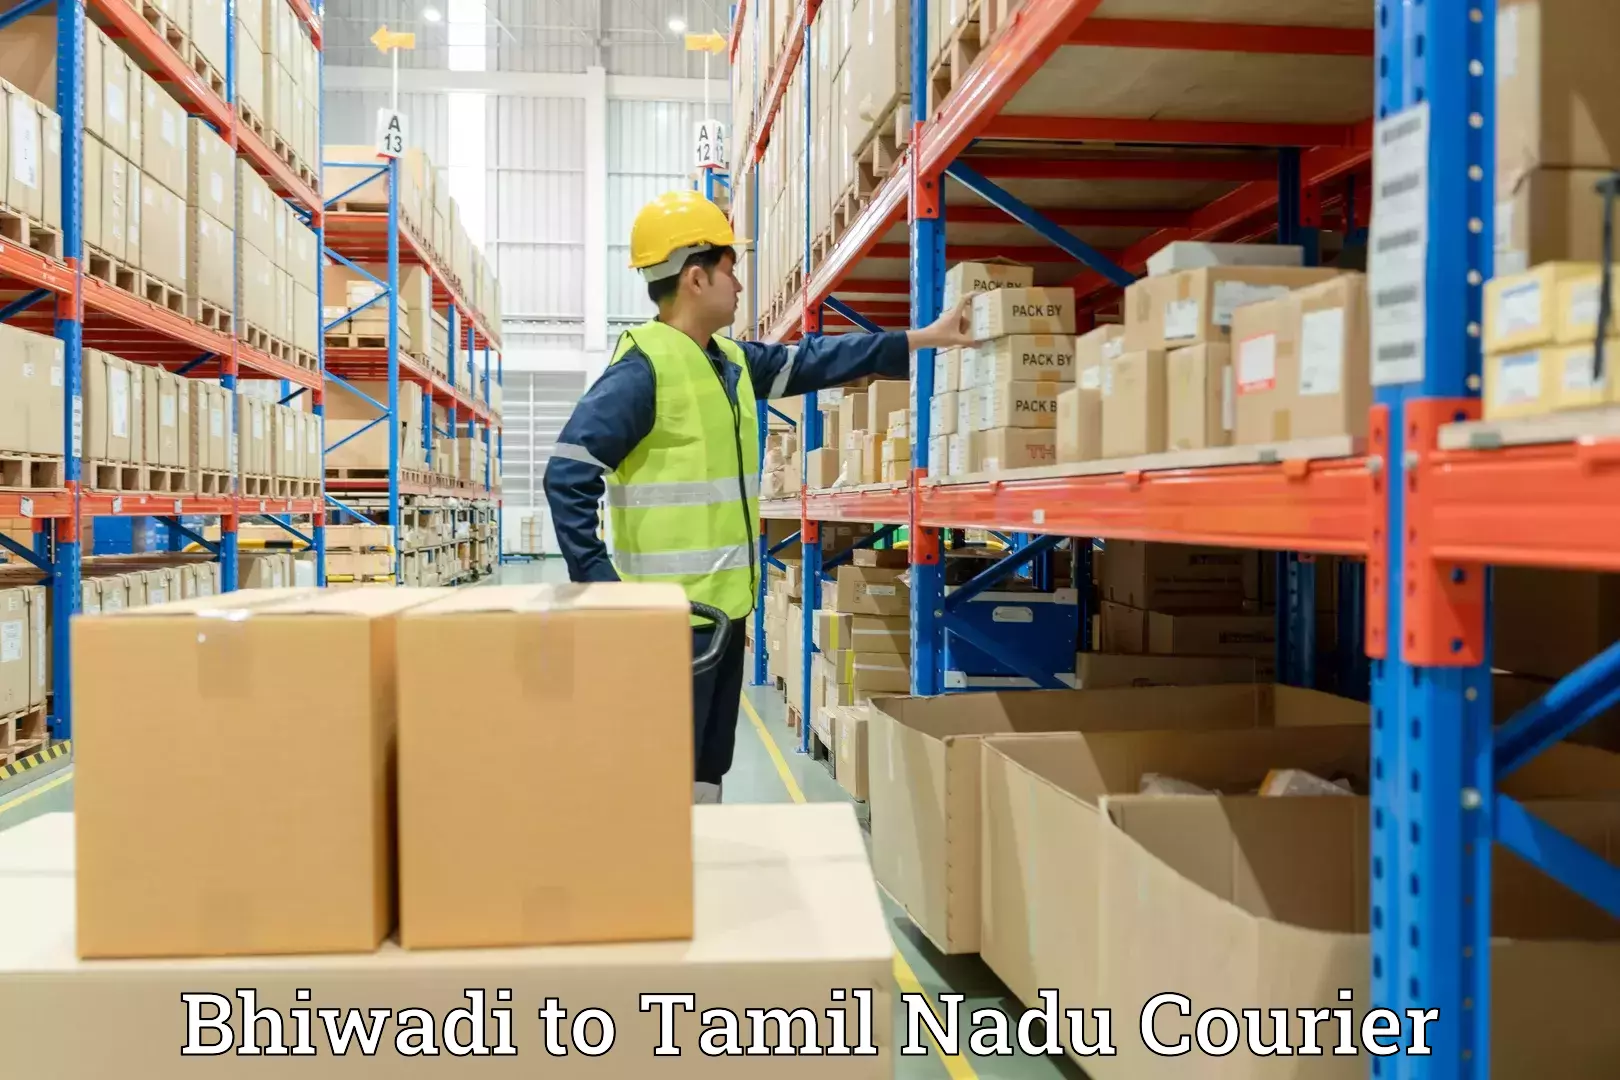 Furniture transport experts Bhiwadi to Tamil Nadu